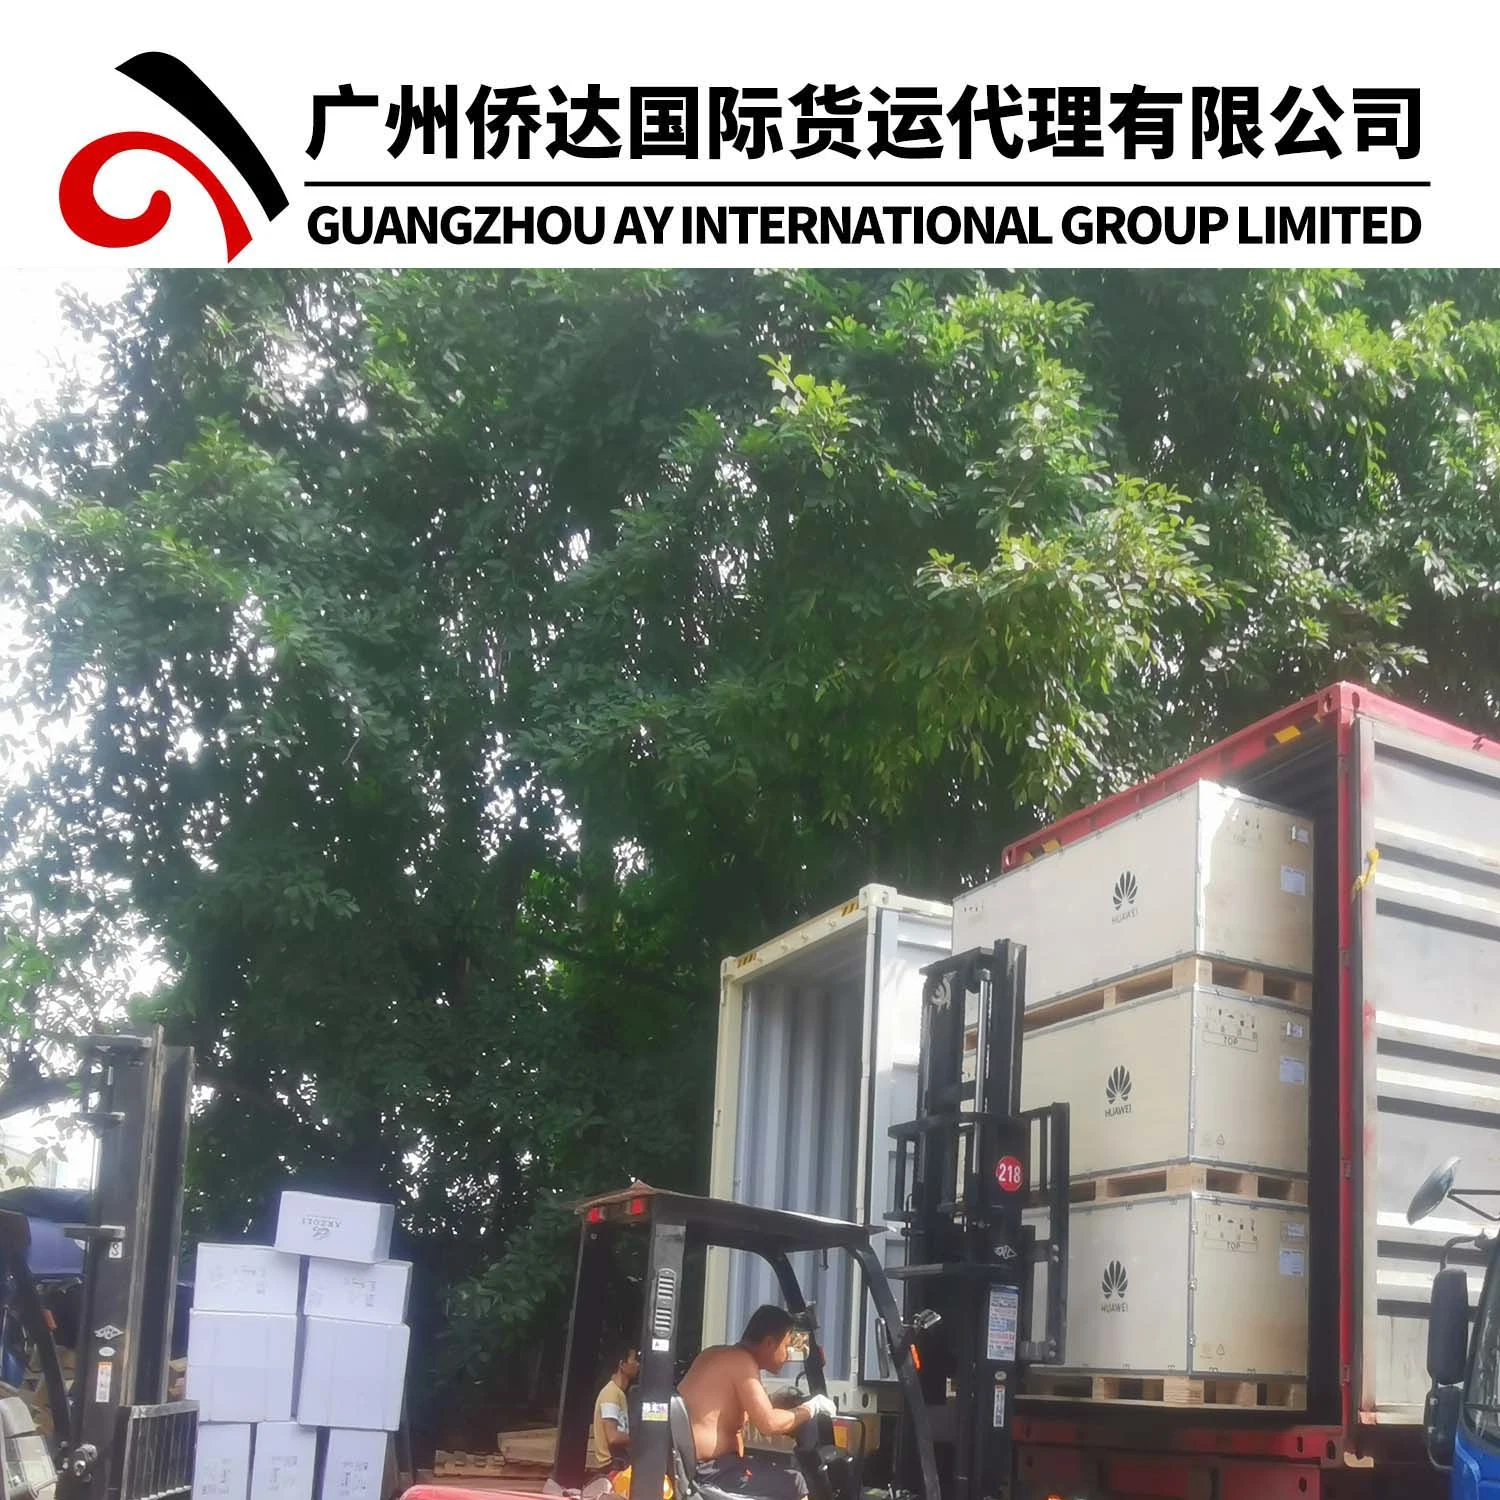 Serviço de Armazém Zhongshan com Agente de exportação profissional Guangzhou